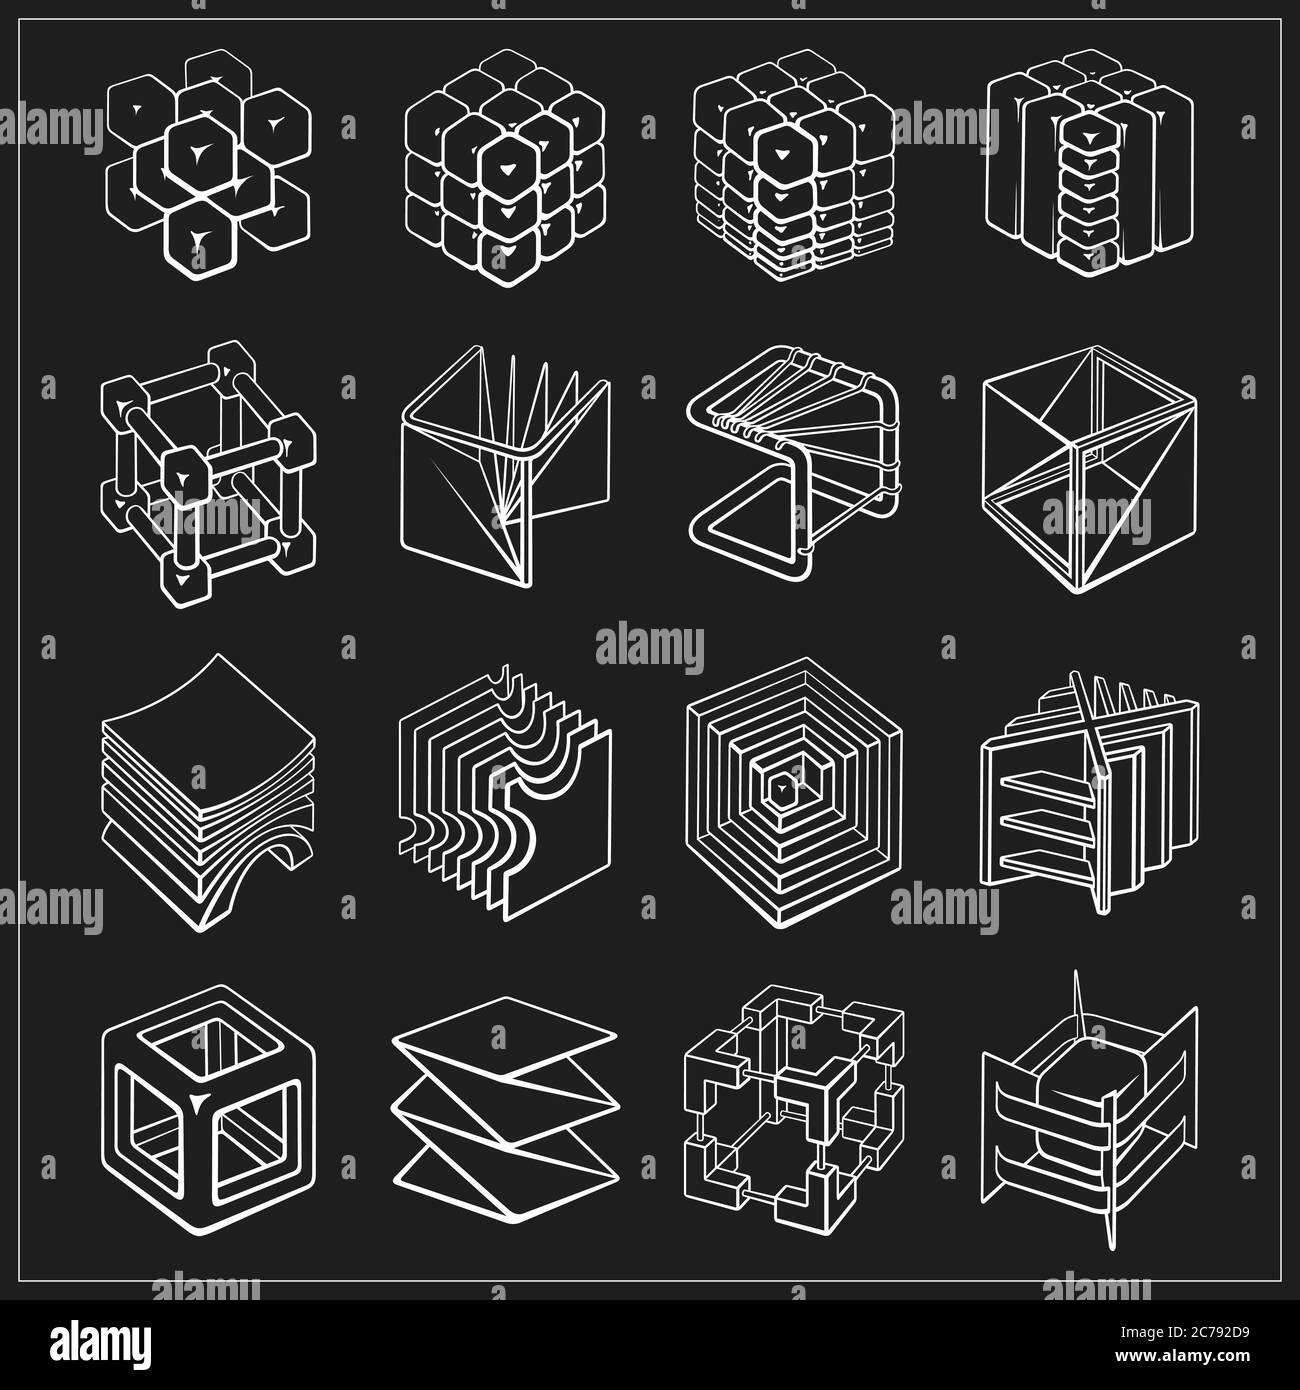 Conjunto de de cubos de formas geométricas en 3D Vector de - Alamy